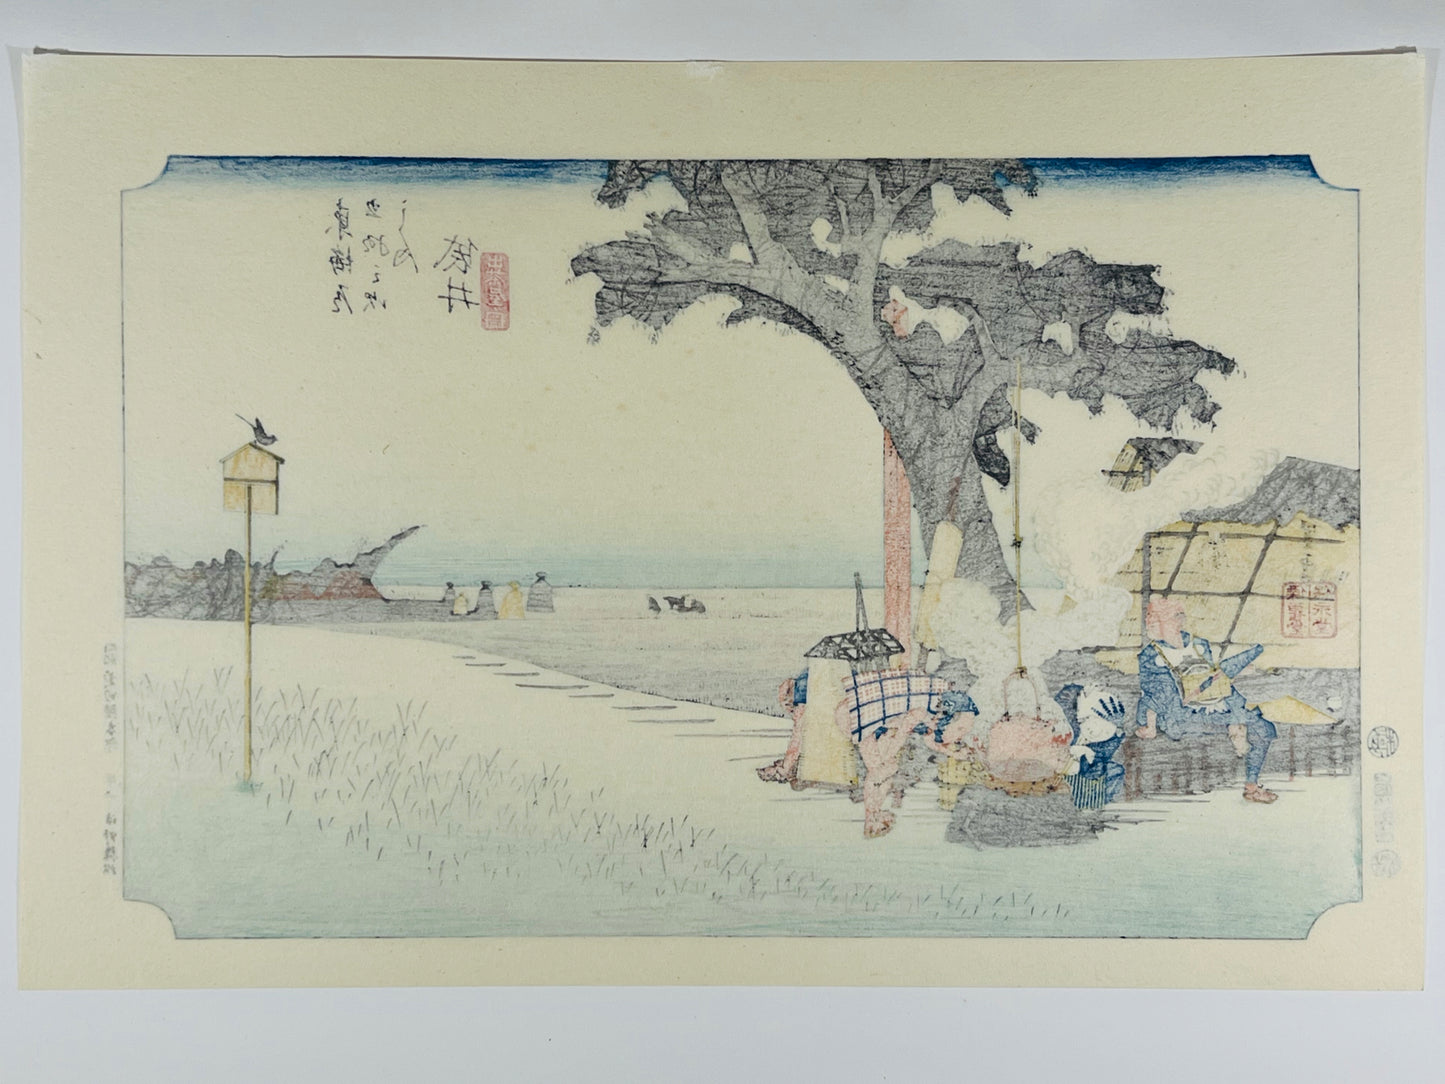 estampe japonaise de paysage d'Hiroshige, dos de l'estampe